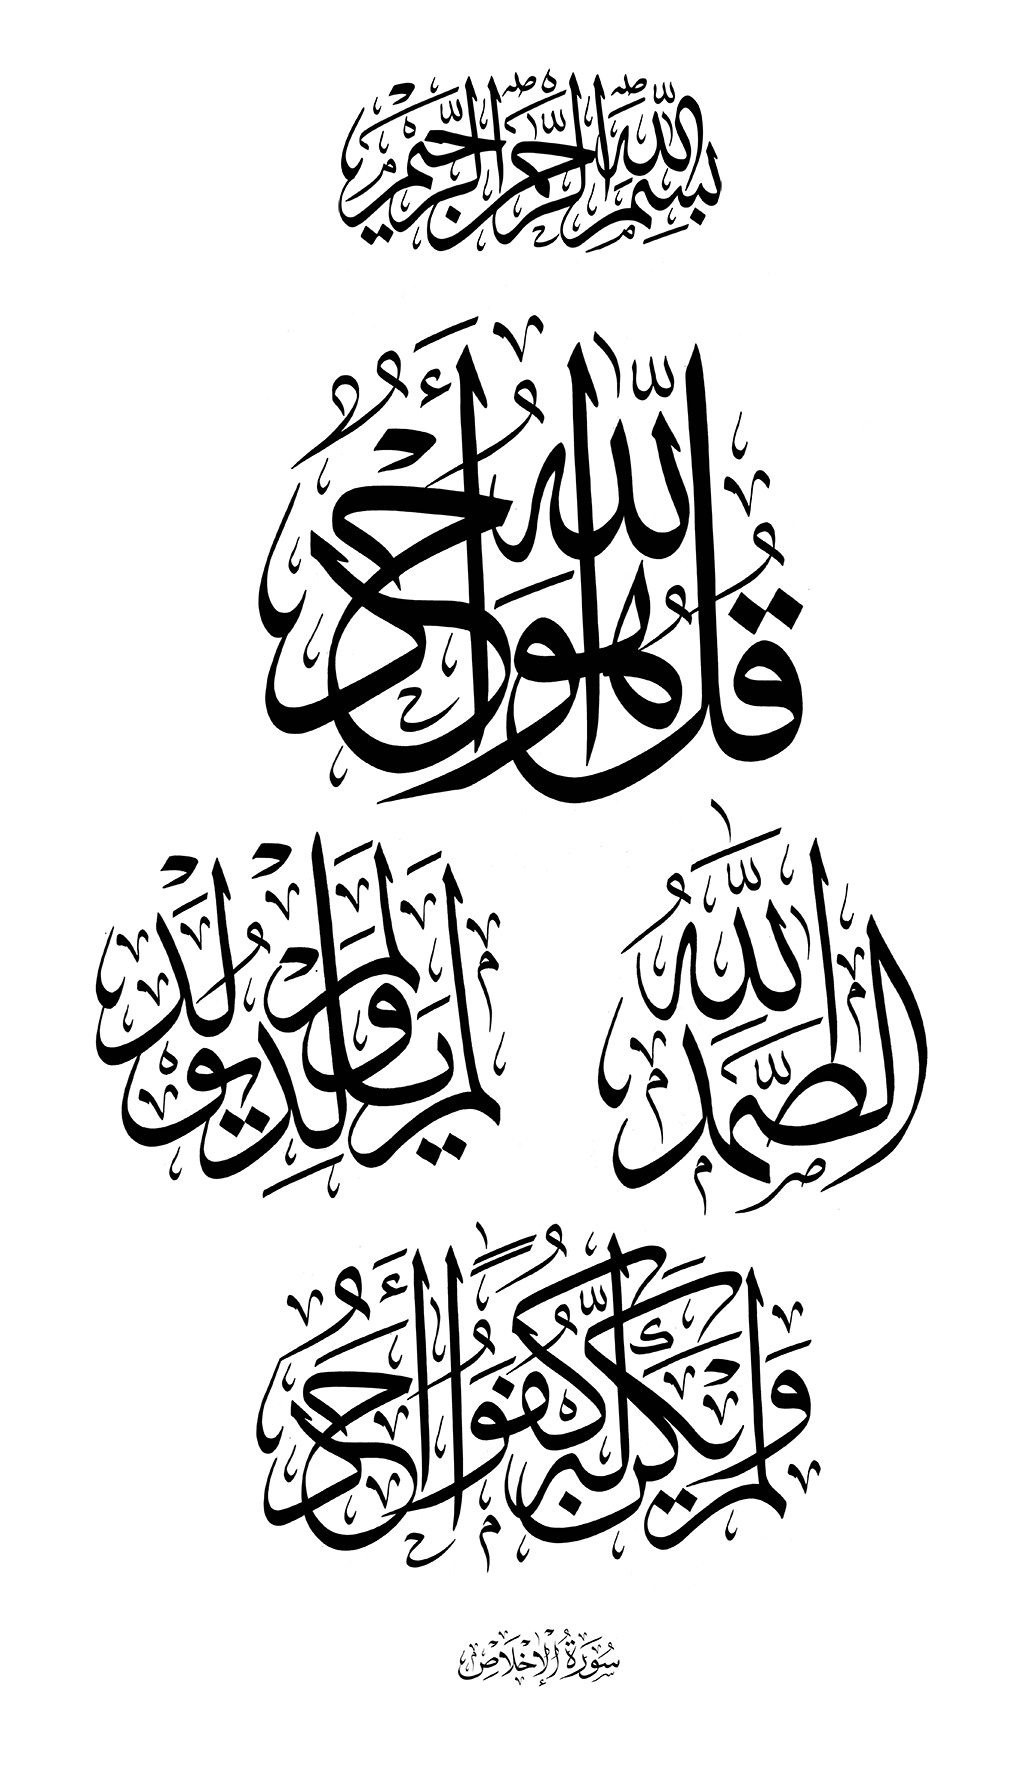 Bela caligrafia árabe da surah alikhlaq capítulo 112 com tradução